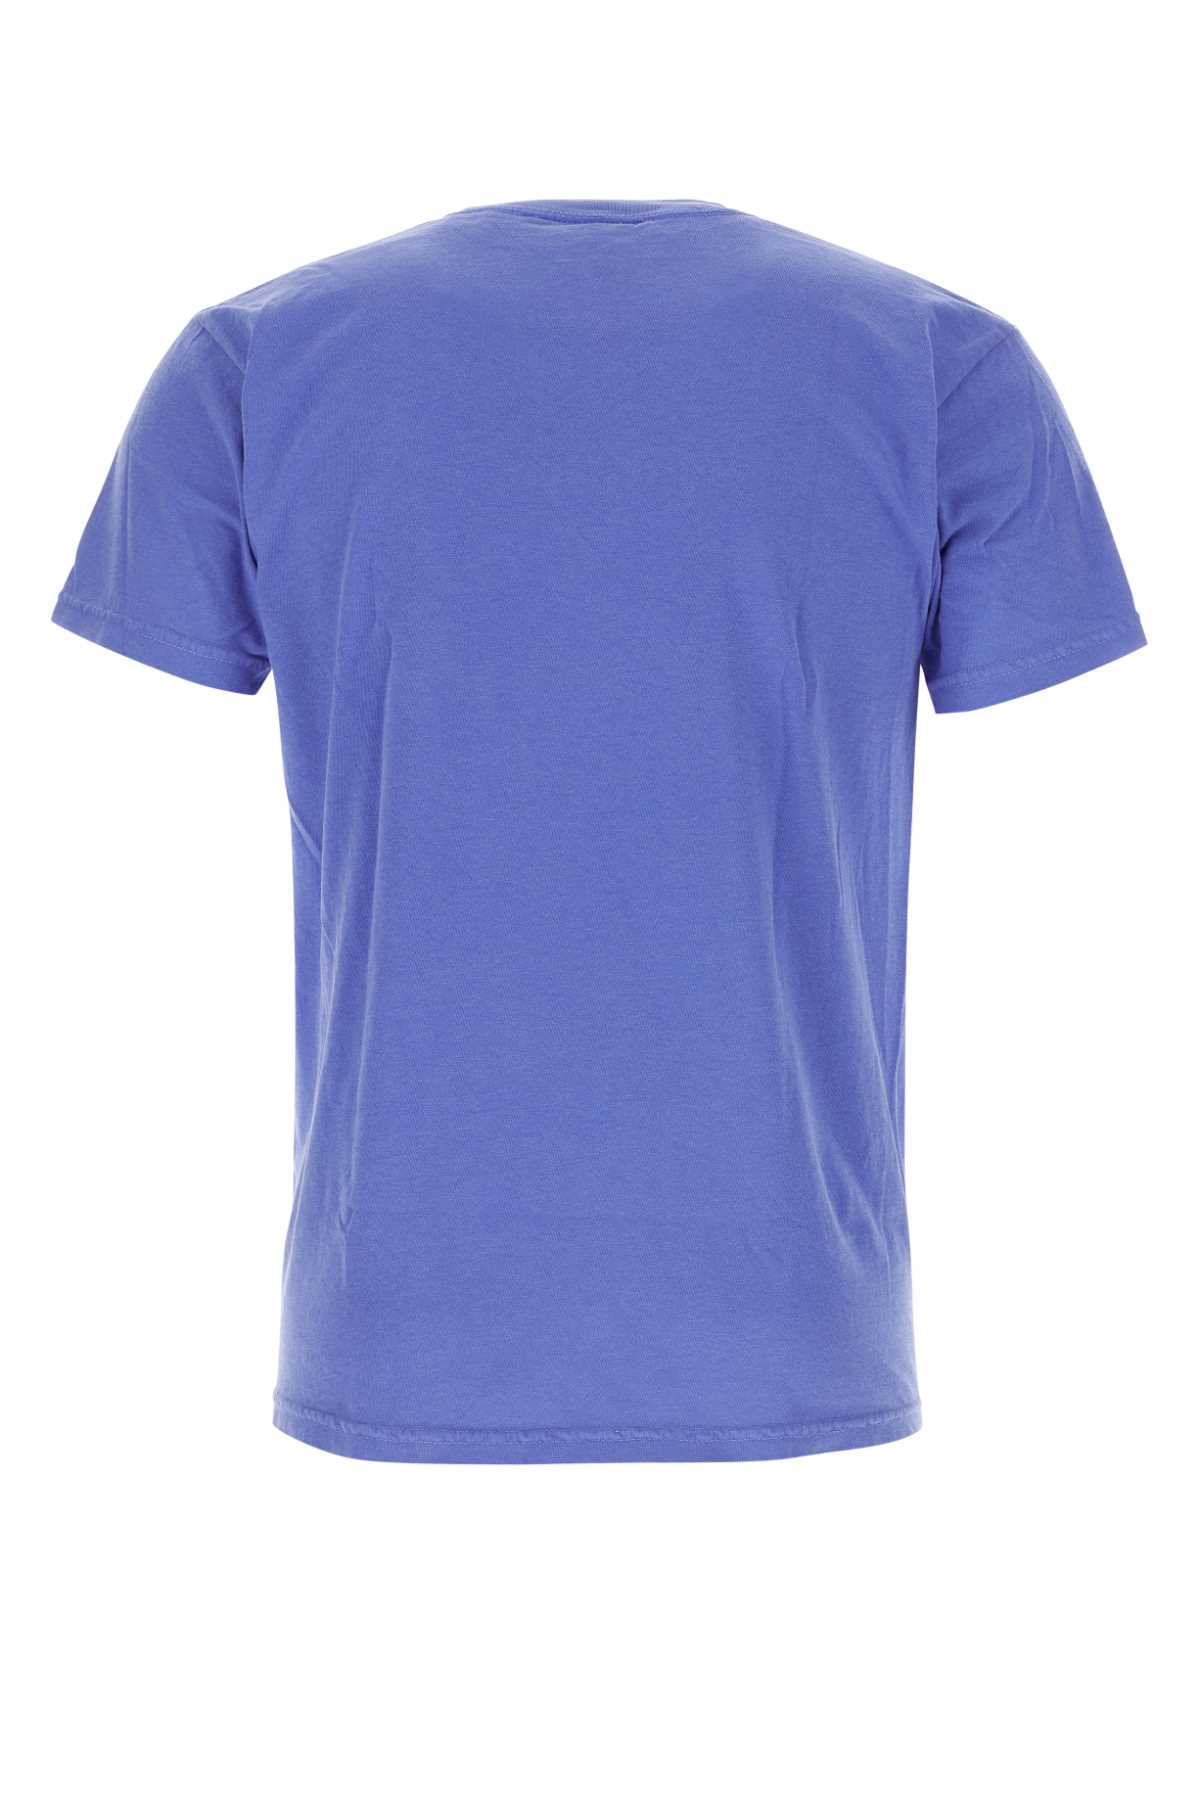 Kidsuper Cerulean Blue Cotton T-shirt In Reunionlilac